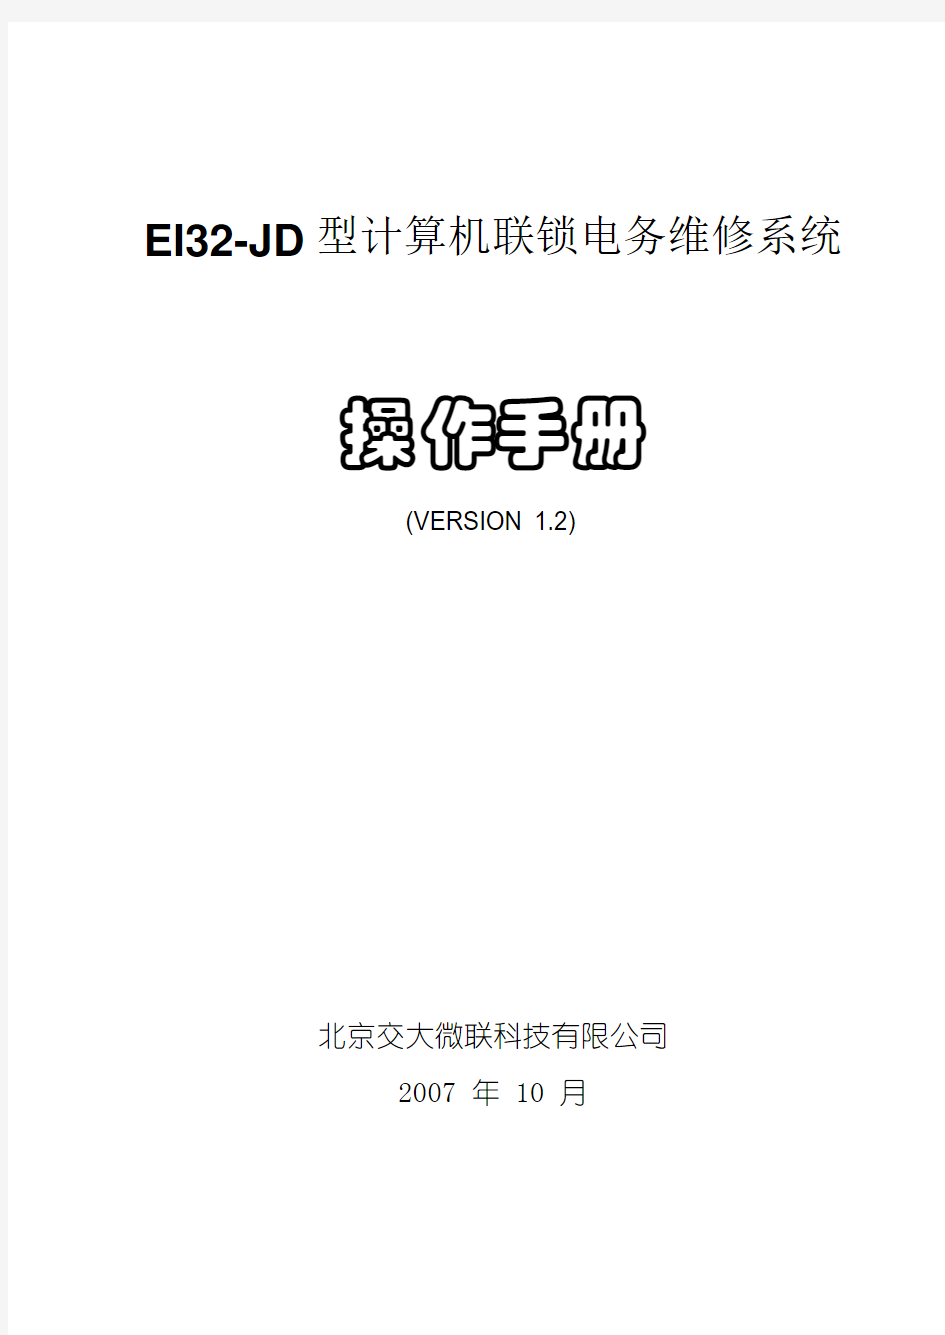 EI32-JD型计算机联锁电务维修系统操作手册(v1.2)